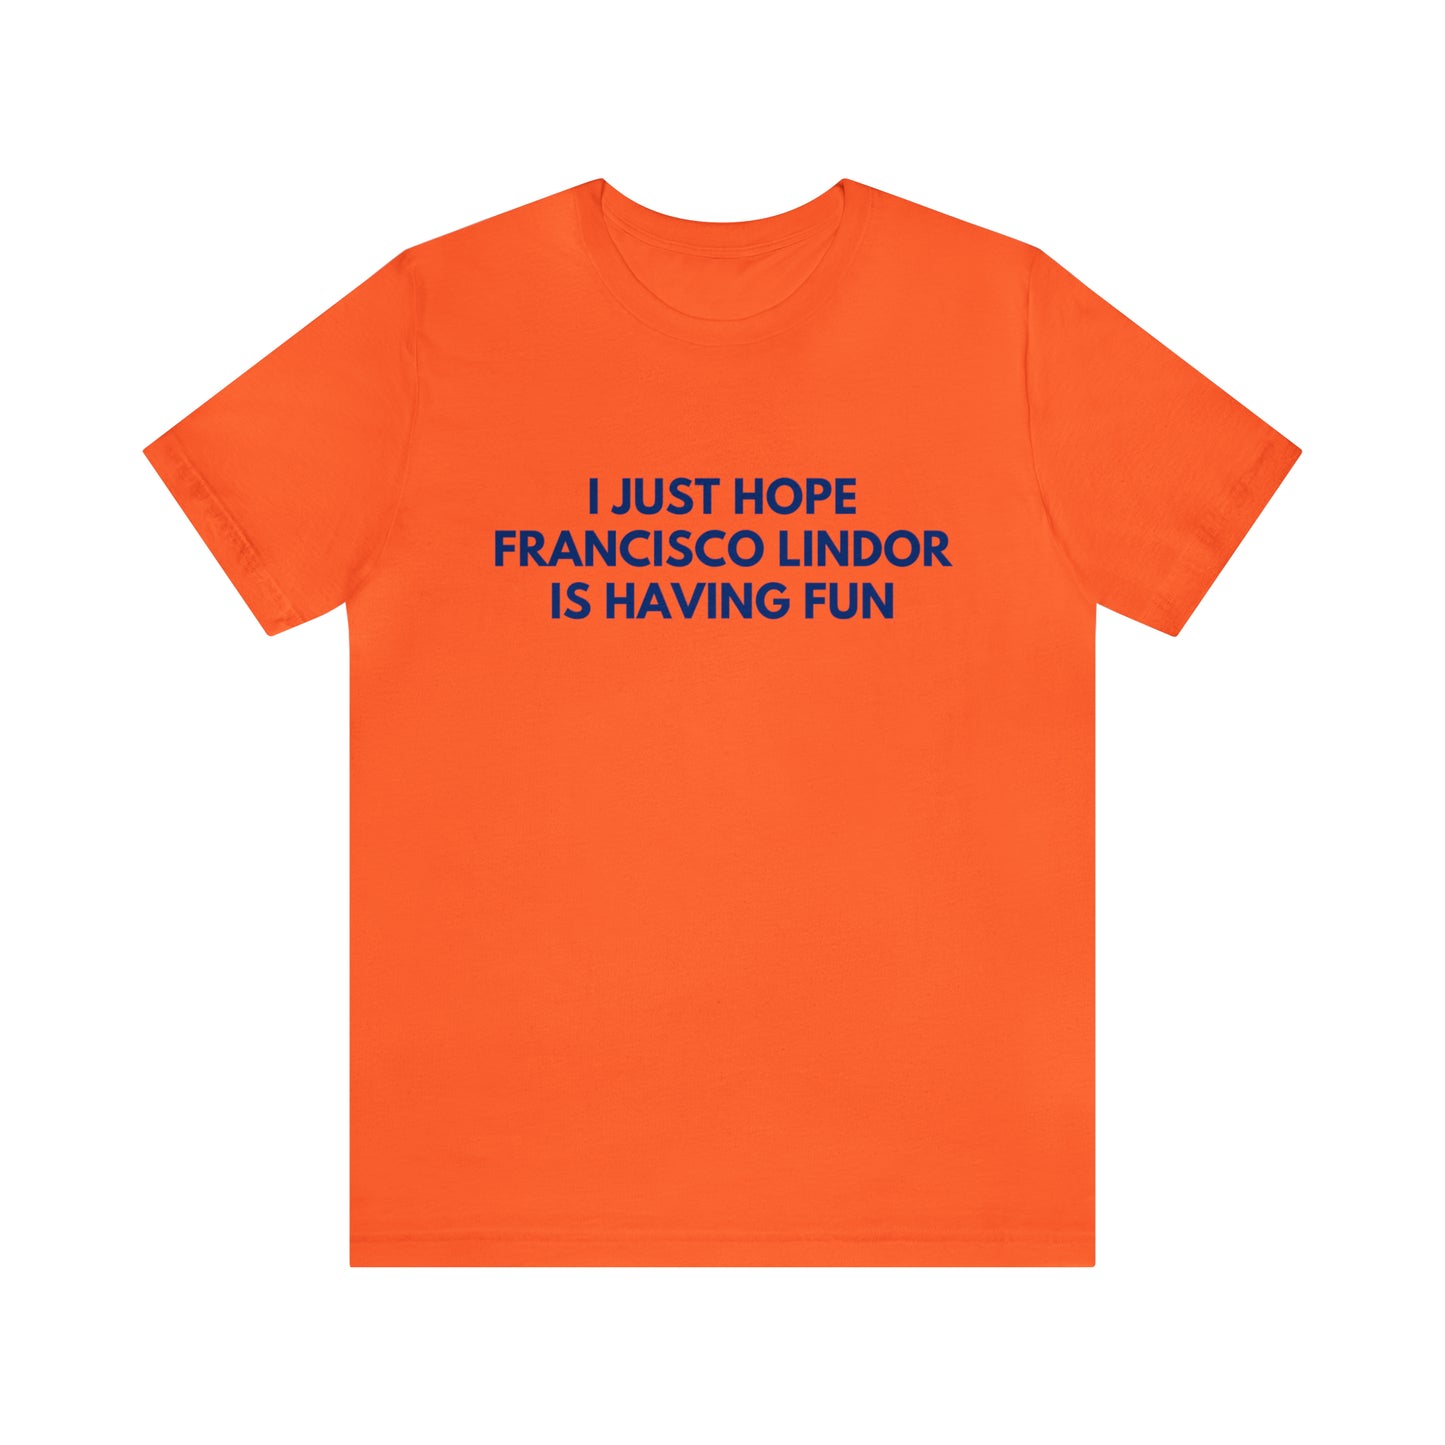 Francisco Lindor Having Fun - Unisex T-shirt